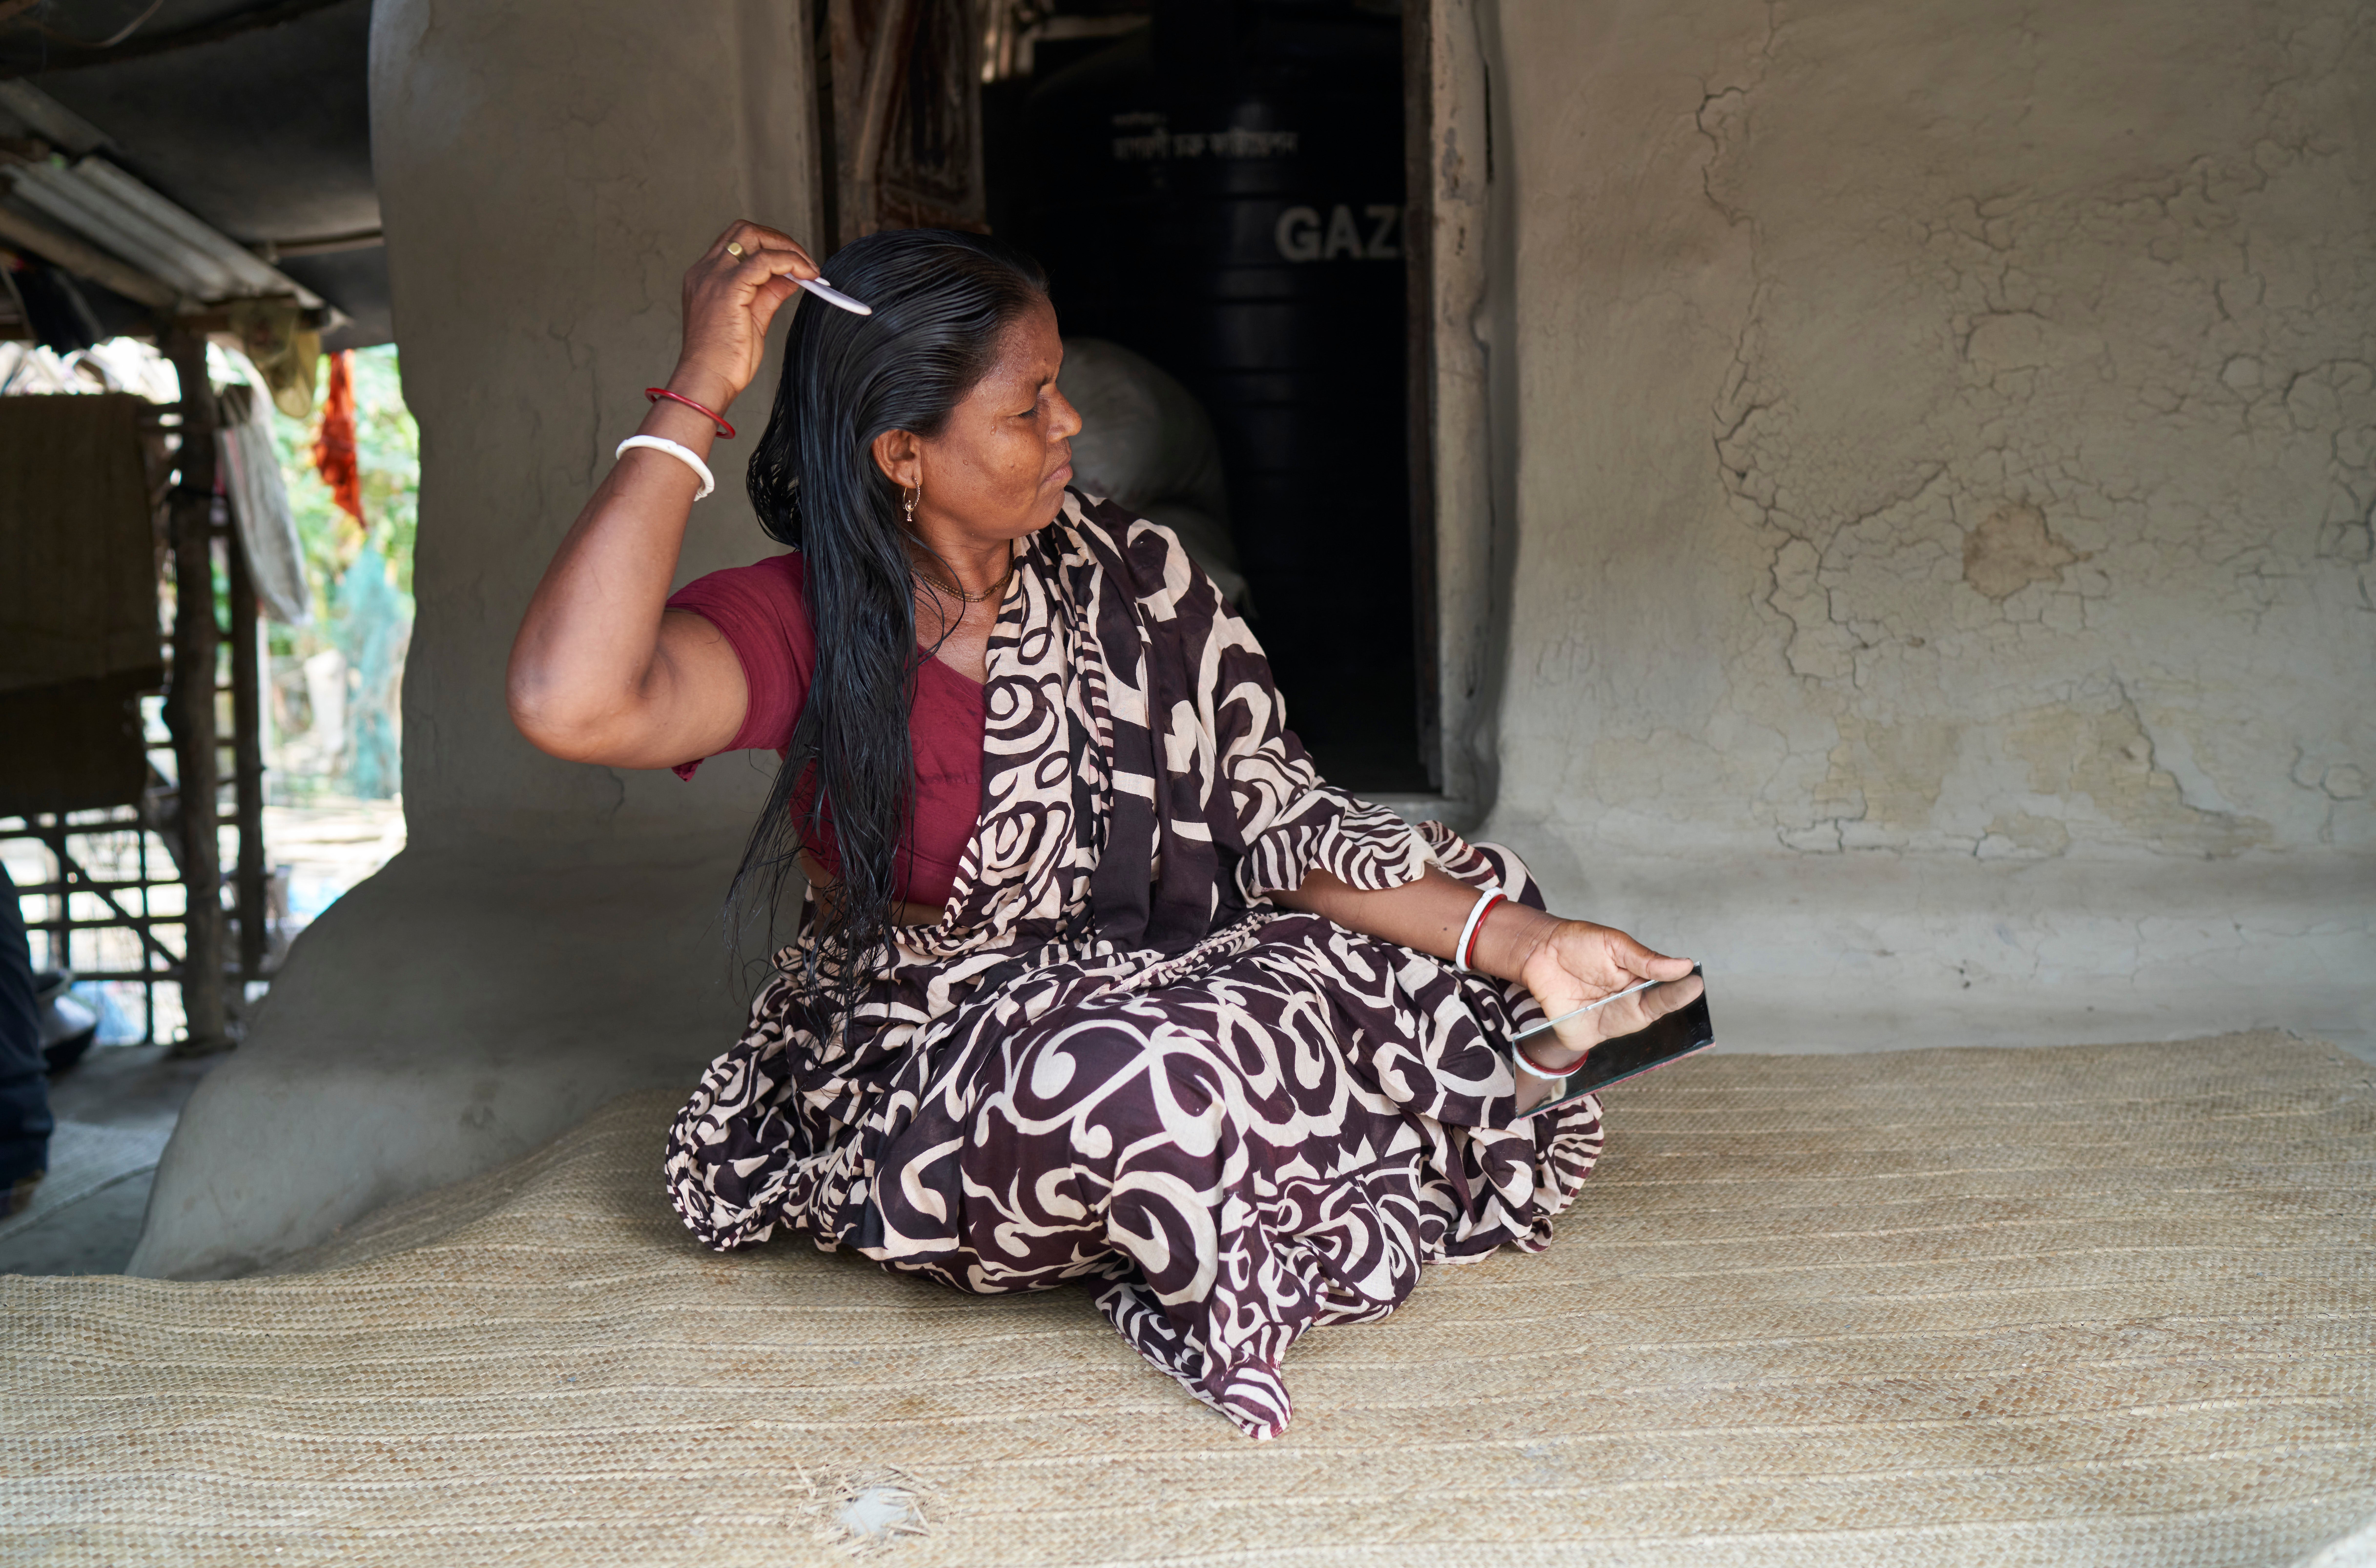 Shyamoli Munda brushing her hair, Bhetkali, Satkhira, Bangladesh